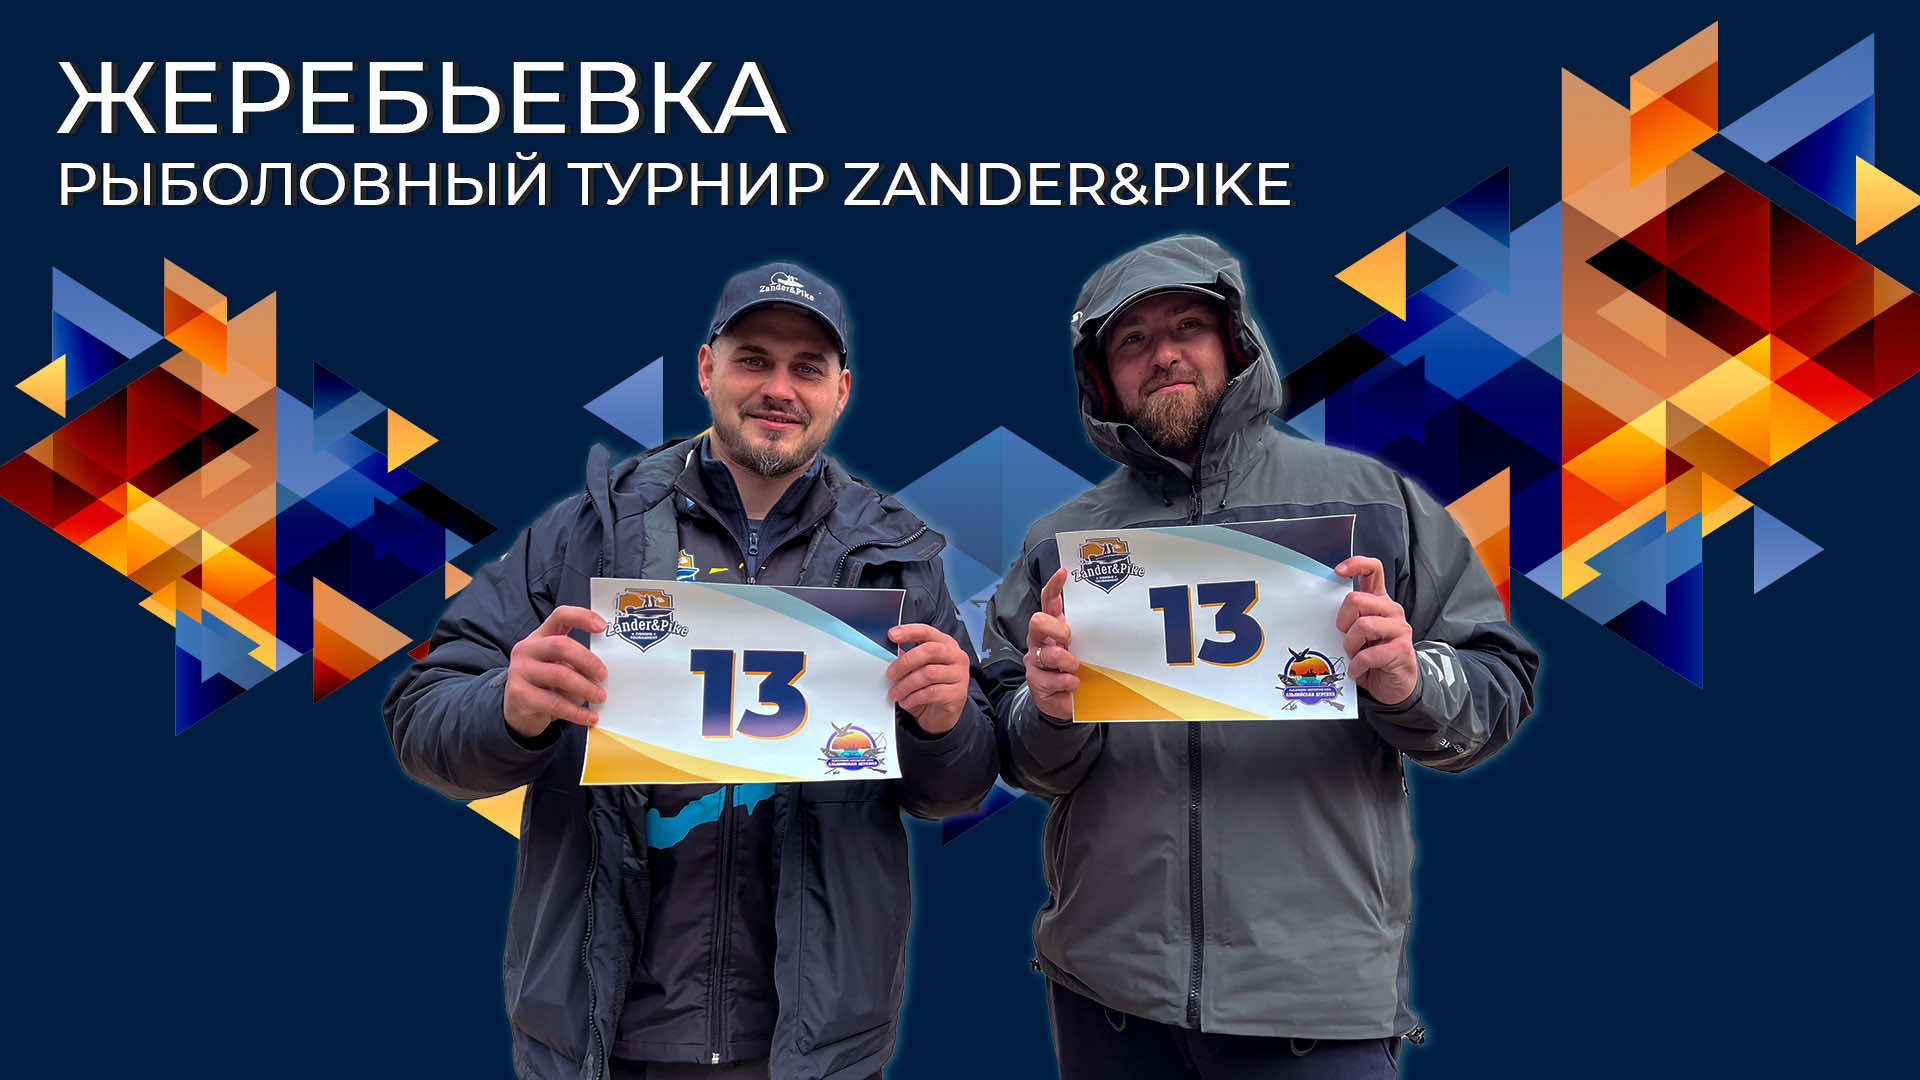 Жеребьевка | Рыболовный турнир Zander&Pike